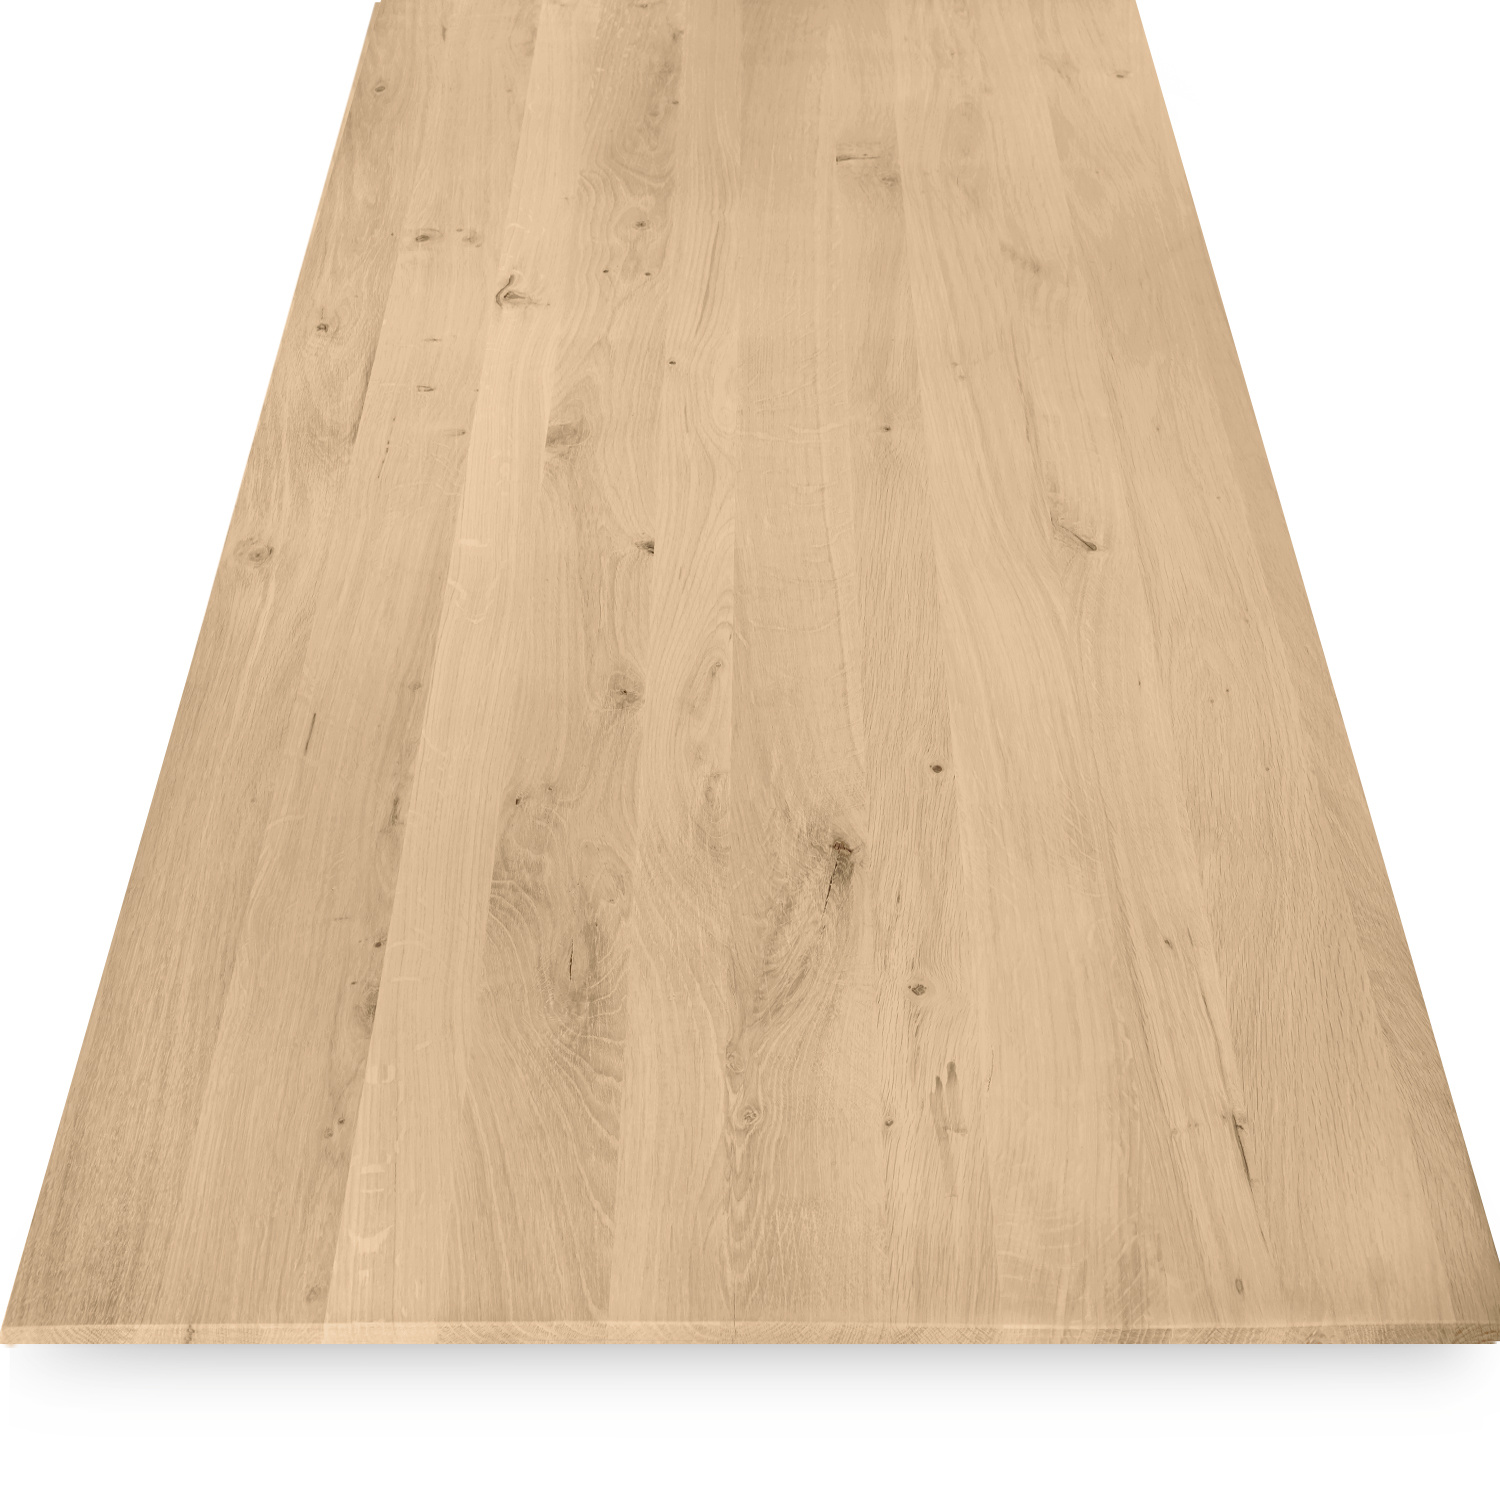  Eiken  tafelblad verjongd - op maat - 4 cm dik (1-laag) - met verjongde rand - rustiek Europees eikenhout - verlijmd kd 8-12% - 50-120x50-300 cm